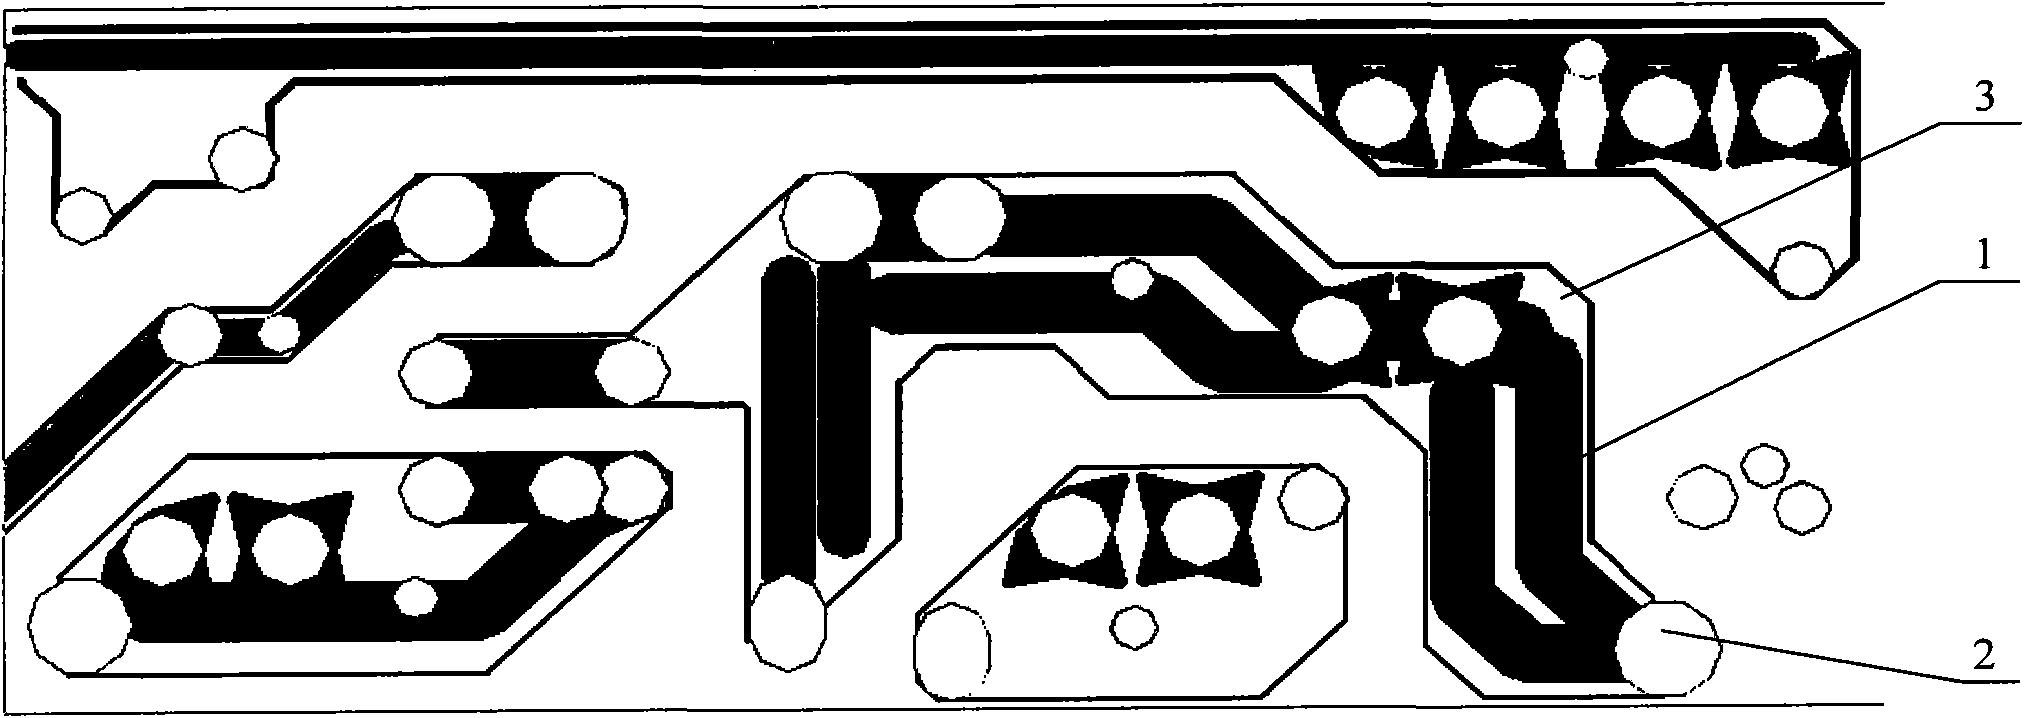 Printed circuit board, tinning line thereof and tinning method thereof